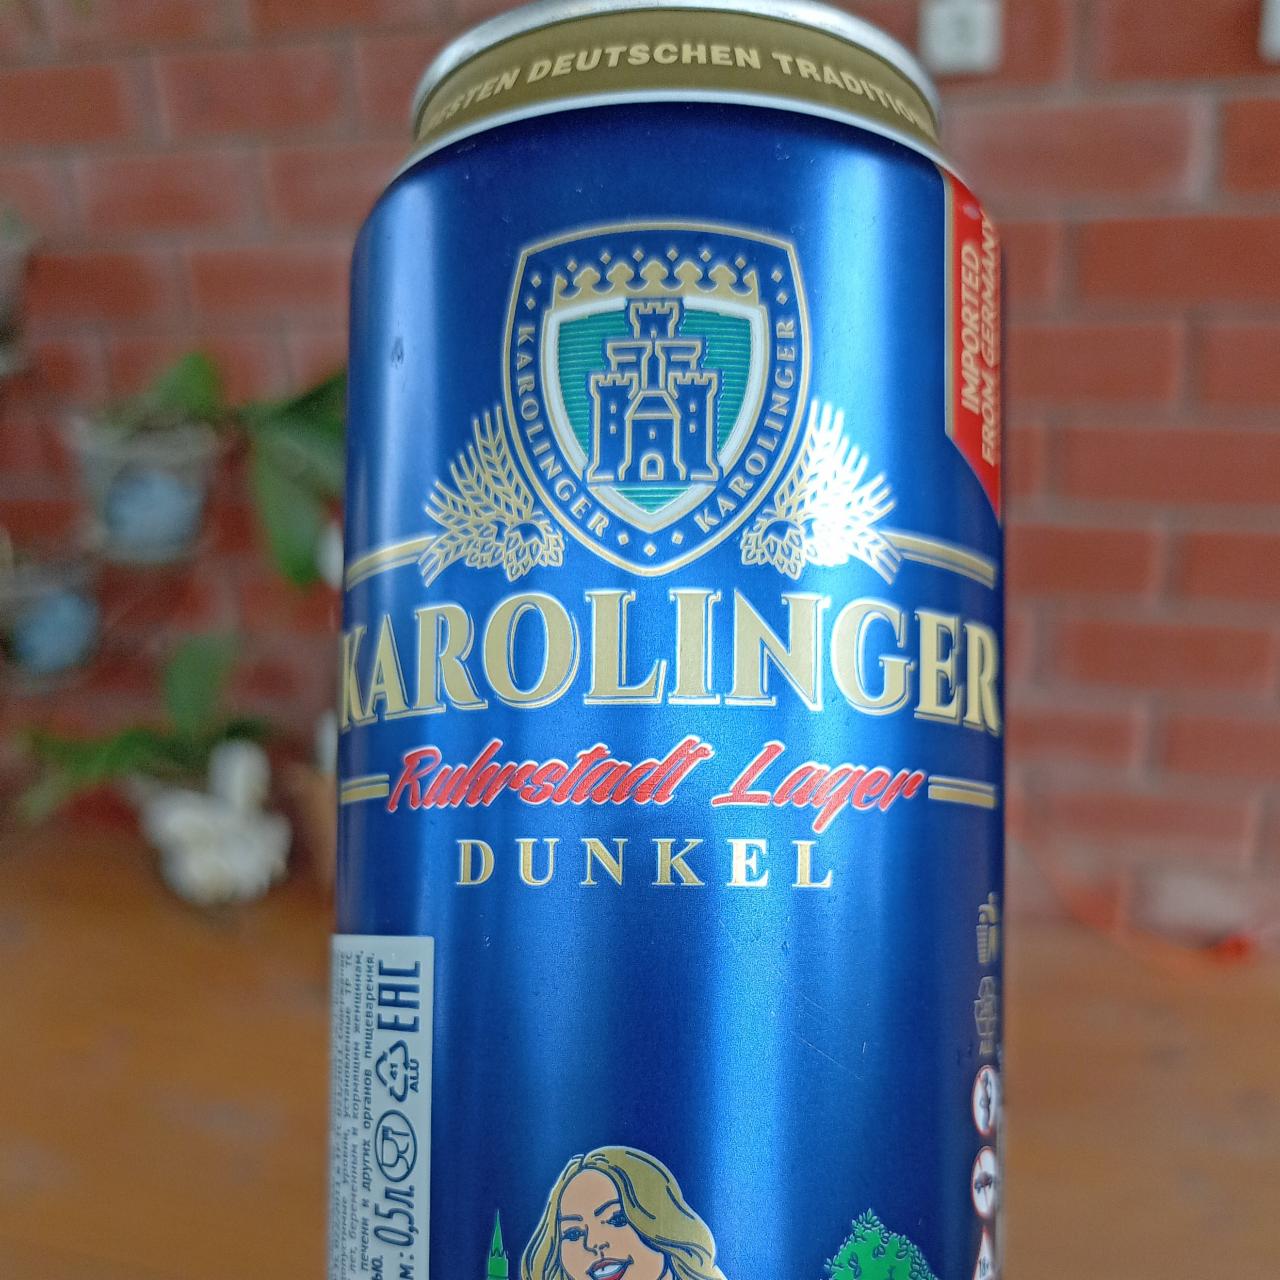 Фото - Пиво пшеничное светлое нефильтрованное Hefe-Weissbier Naturtrub Karolinger